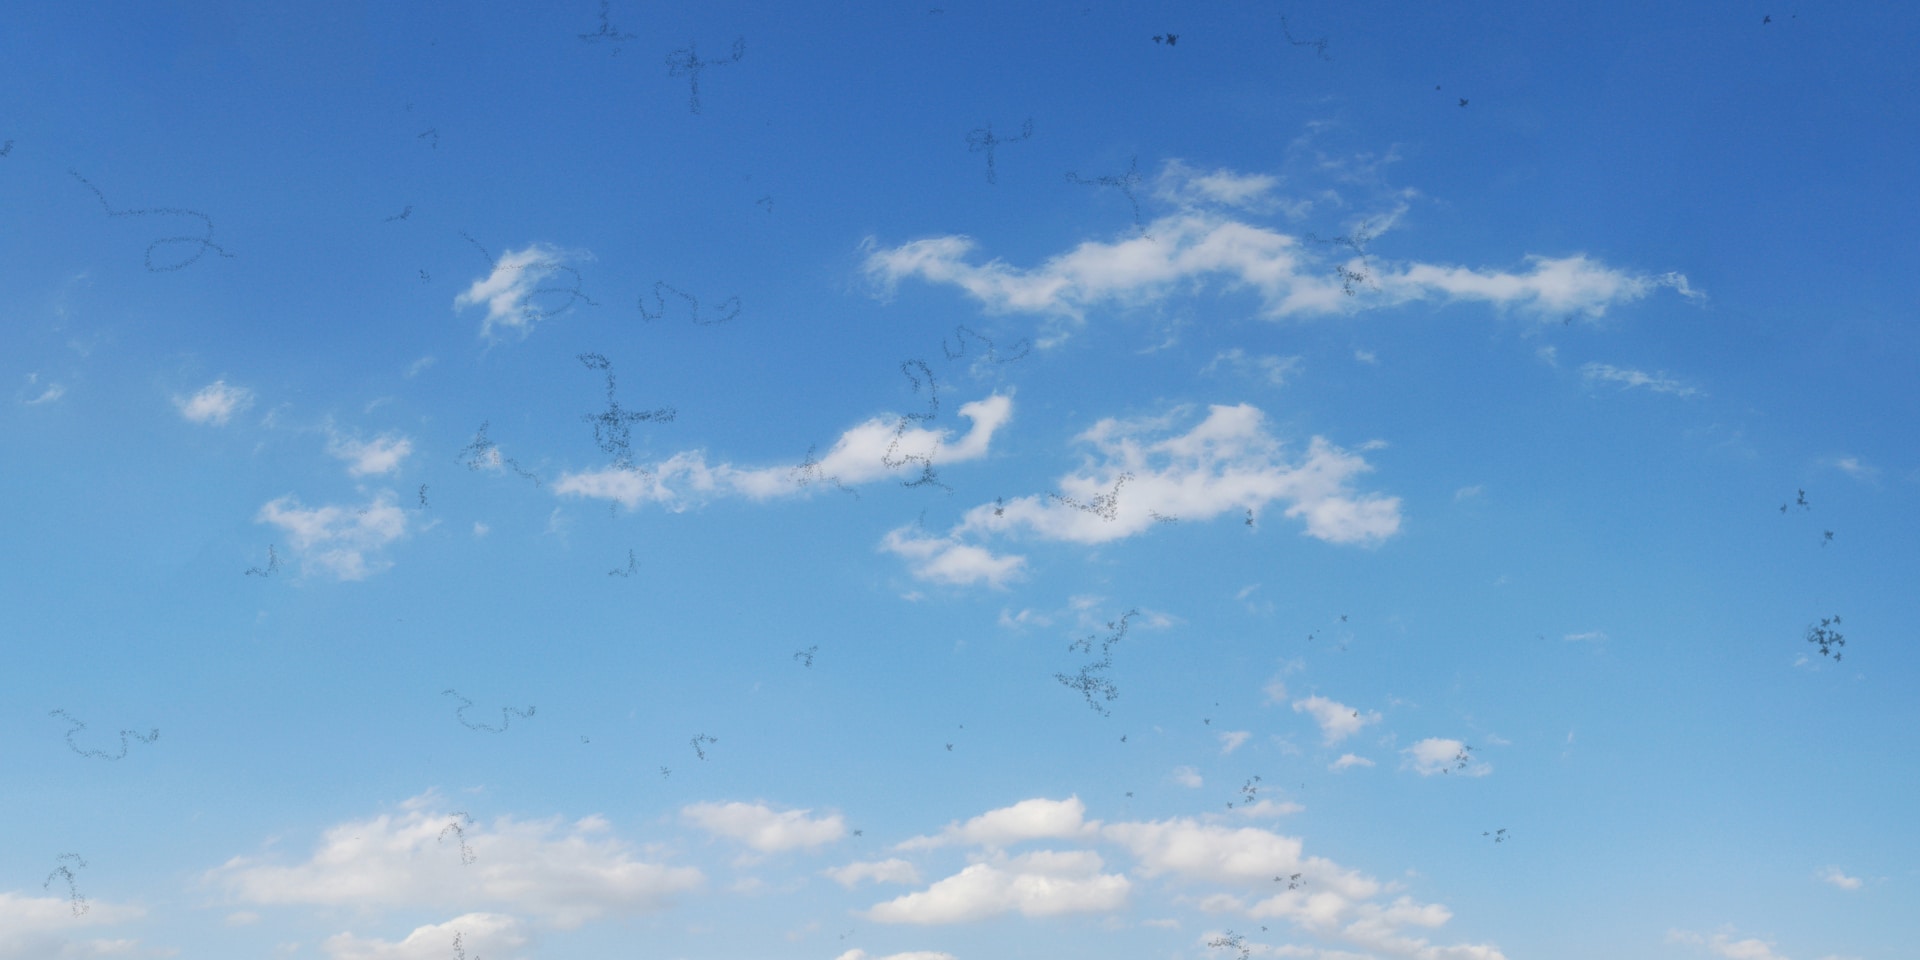 moscas volantes síntomas causas y tratamiento blog de oftalmosalud